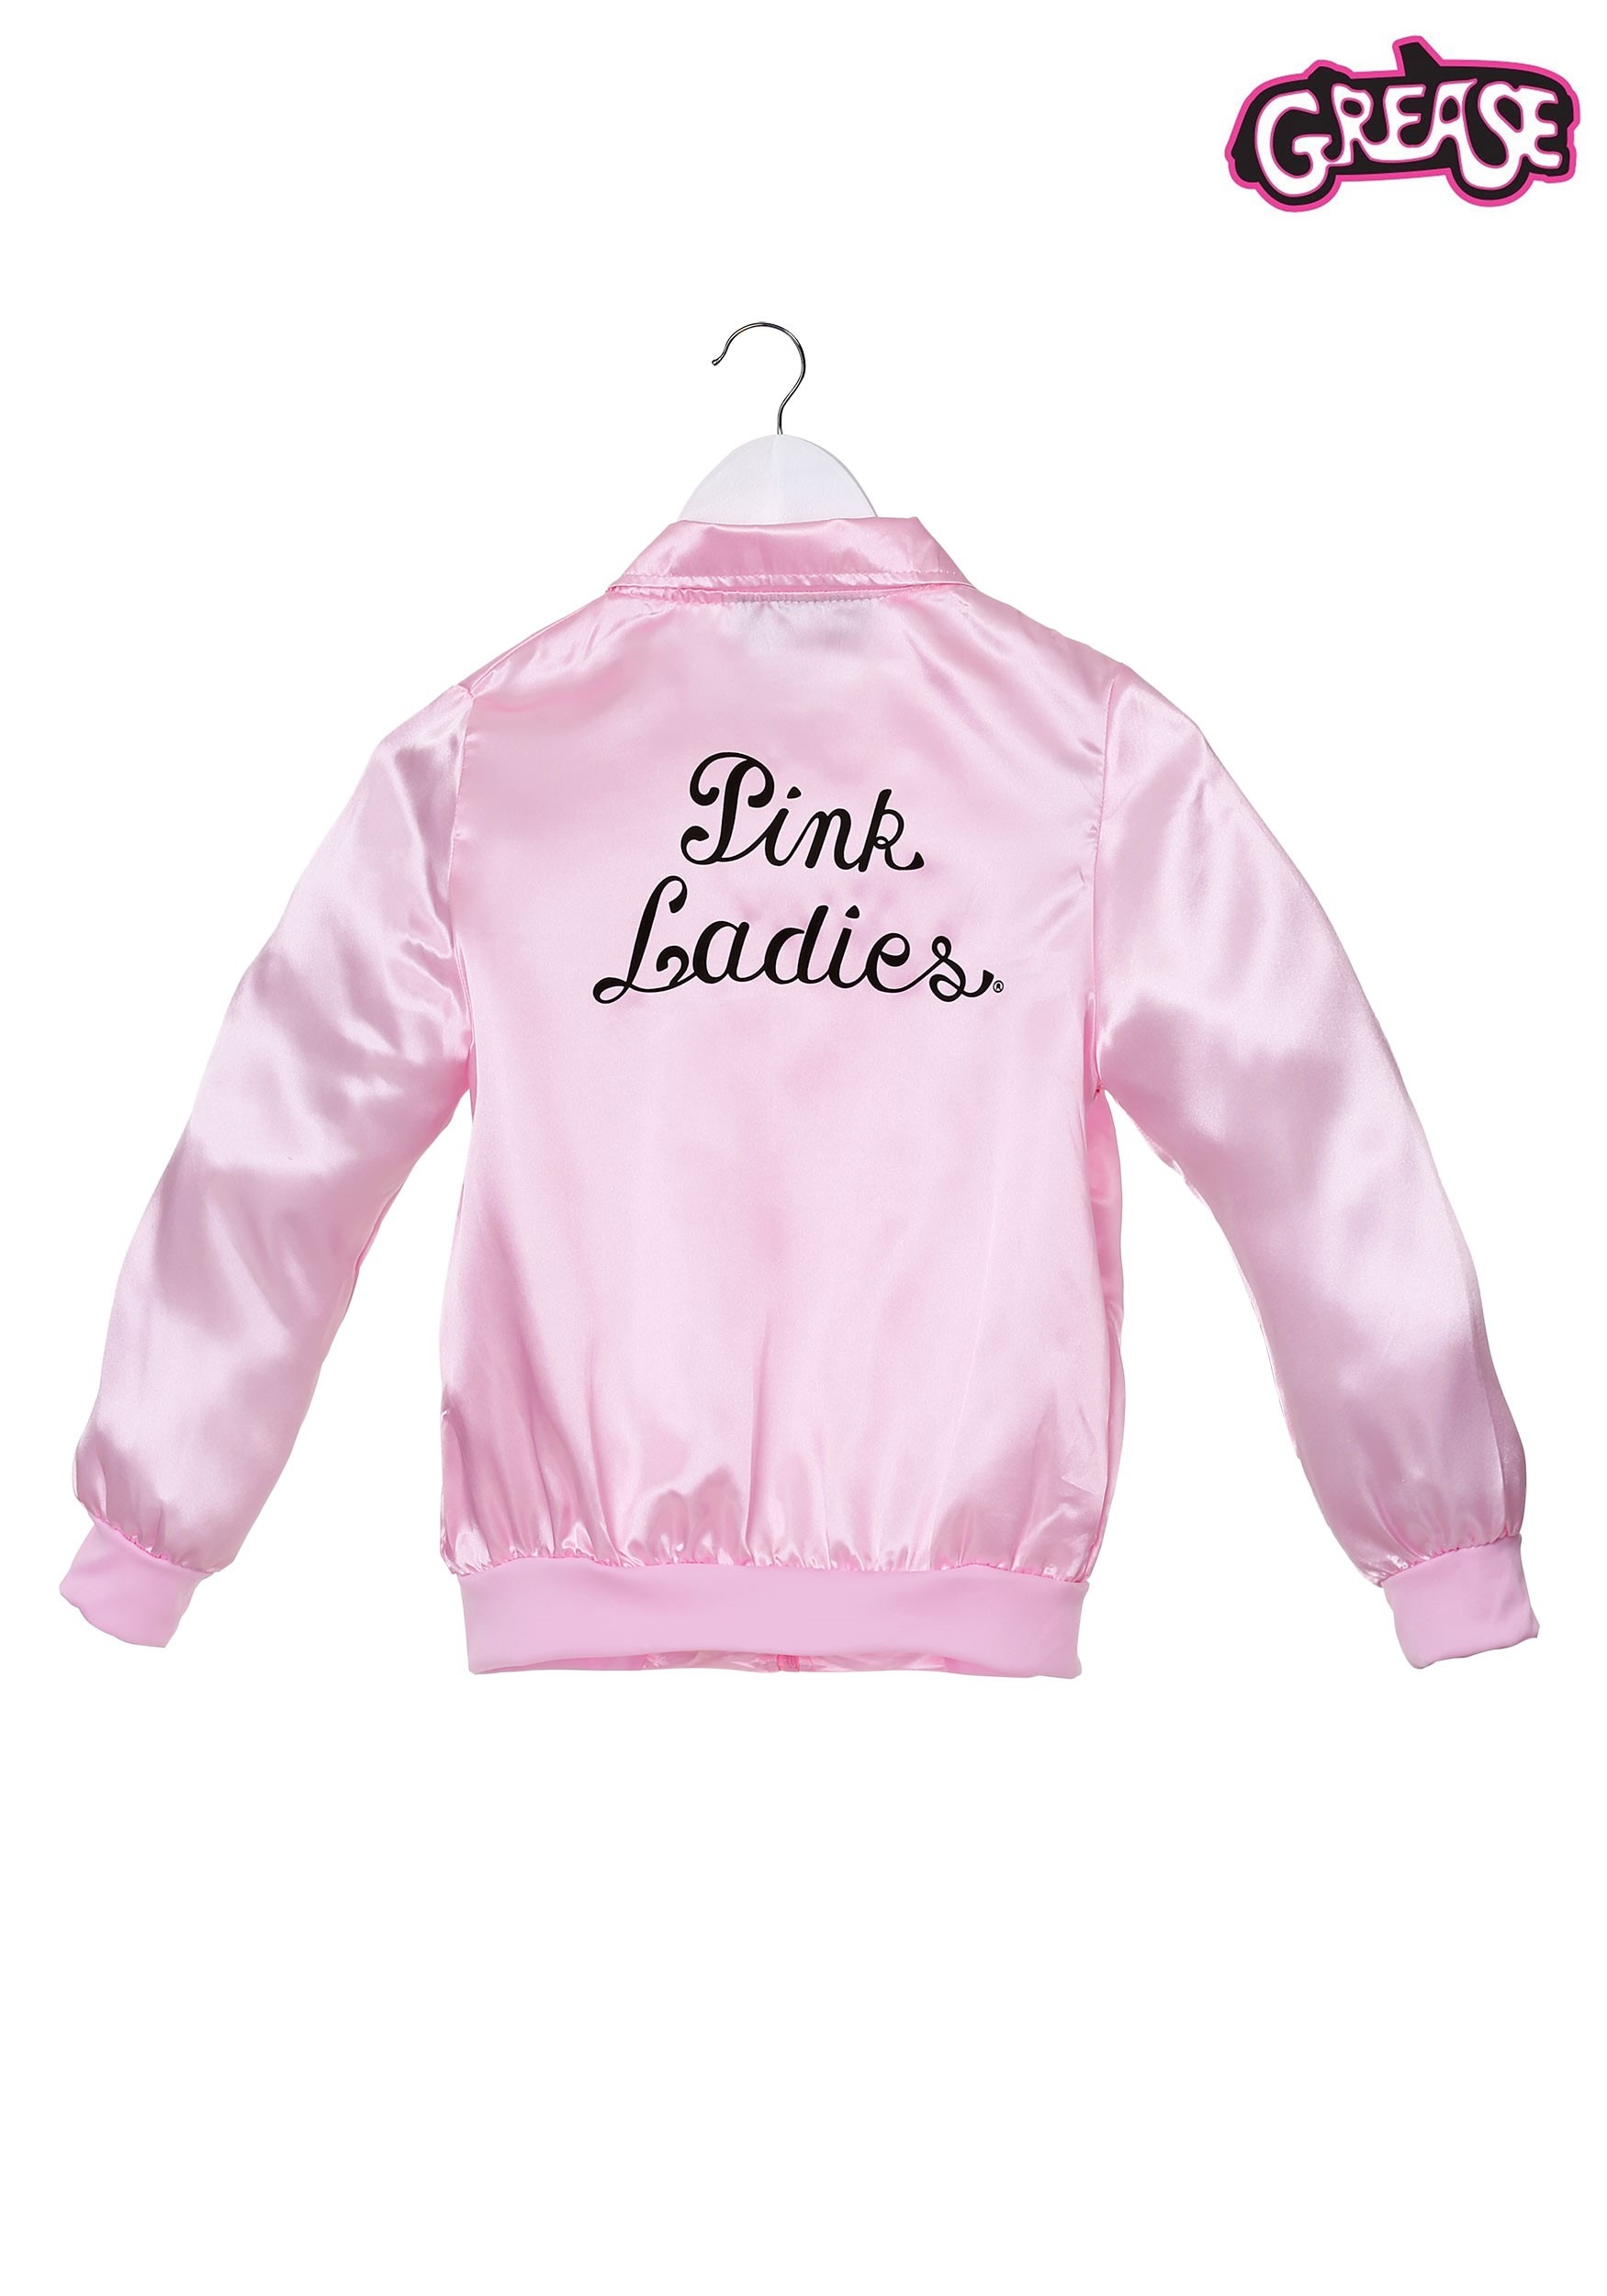 Chaquetas de las Pink Ladies Grease para chicas Baratas